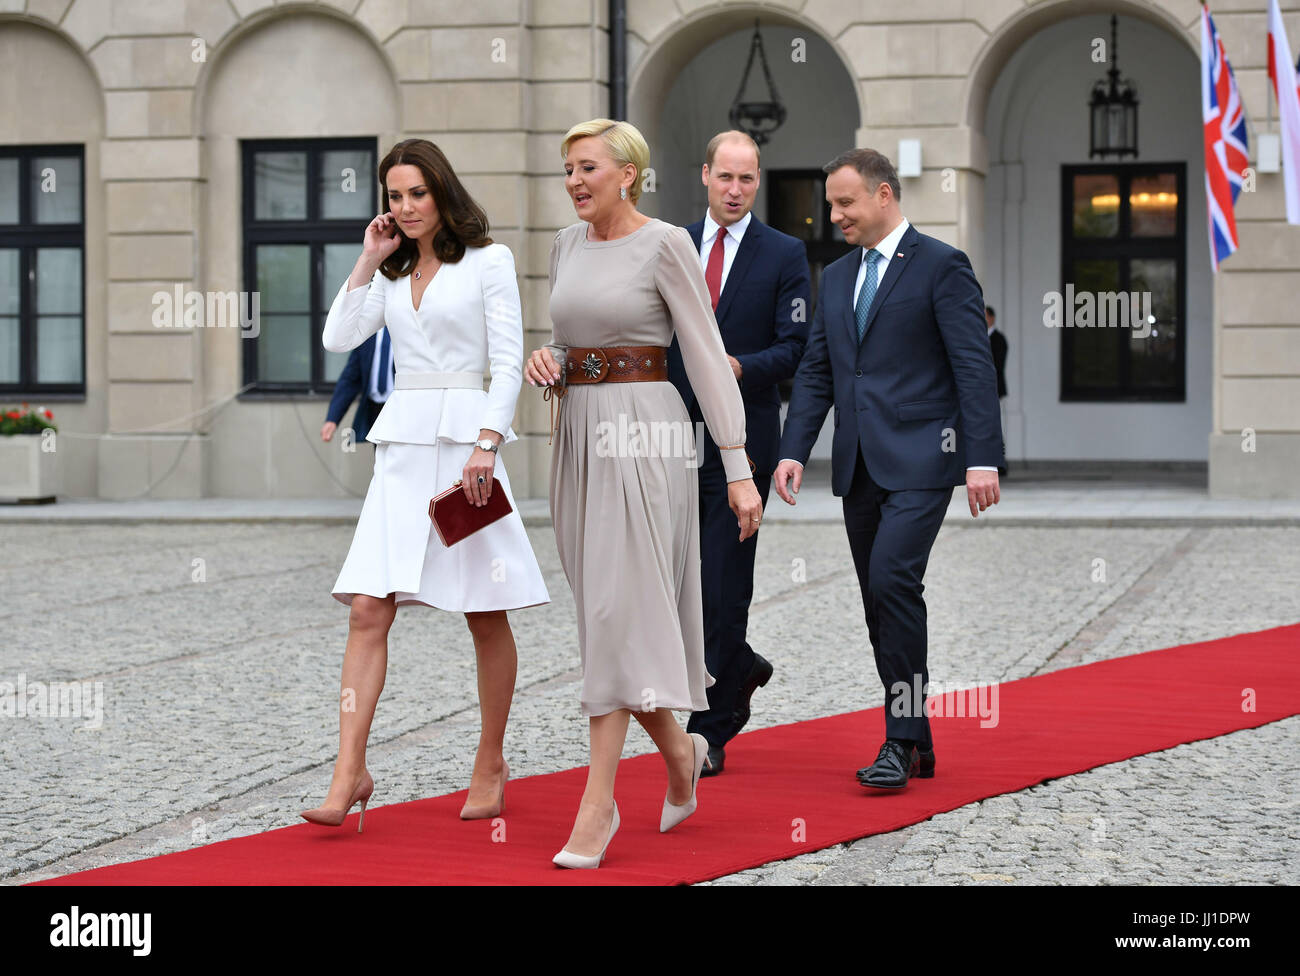 Le duc et la duchesse de Cambridge, rencontrer le Président Andrzej Duda et son épouse, Agata, au palais présidentiel à Varsovie, Pologne, le premier jour de leurs cinq jours tour de Pologne et l'Allemagne. Banque D'Images